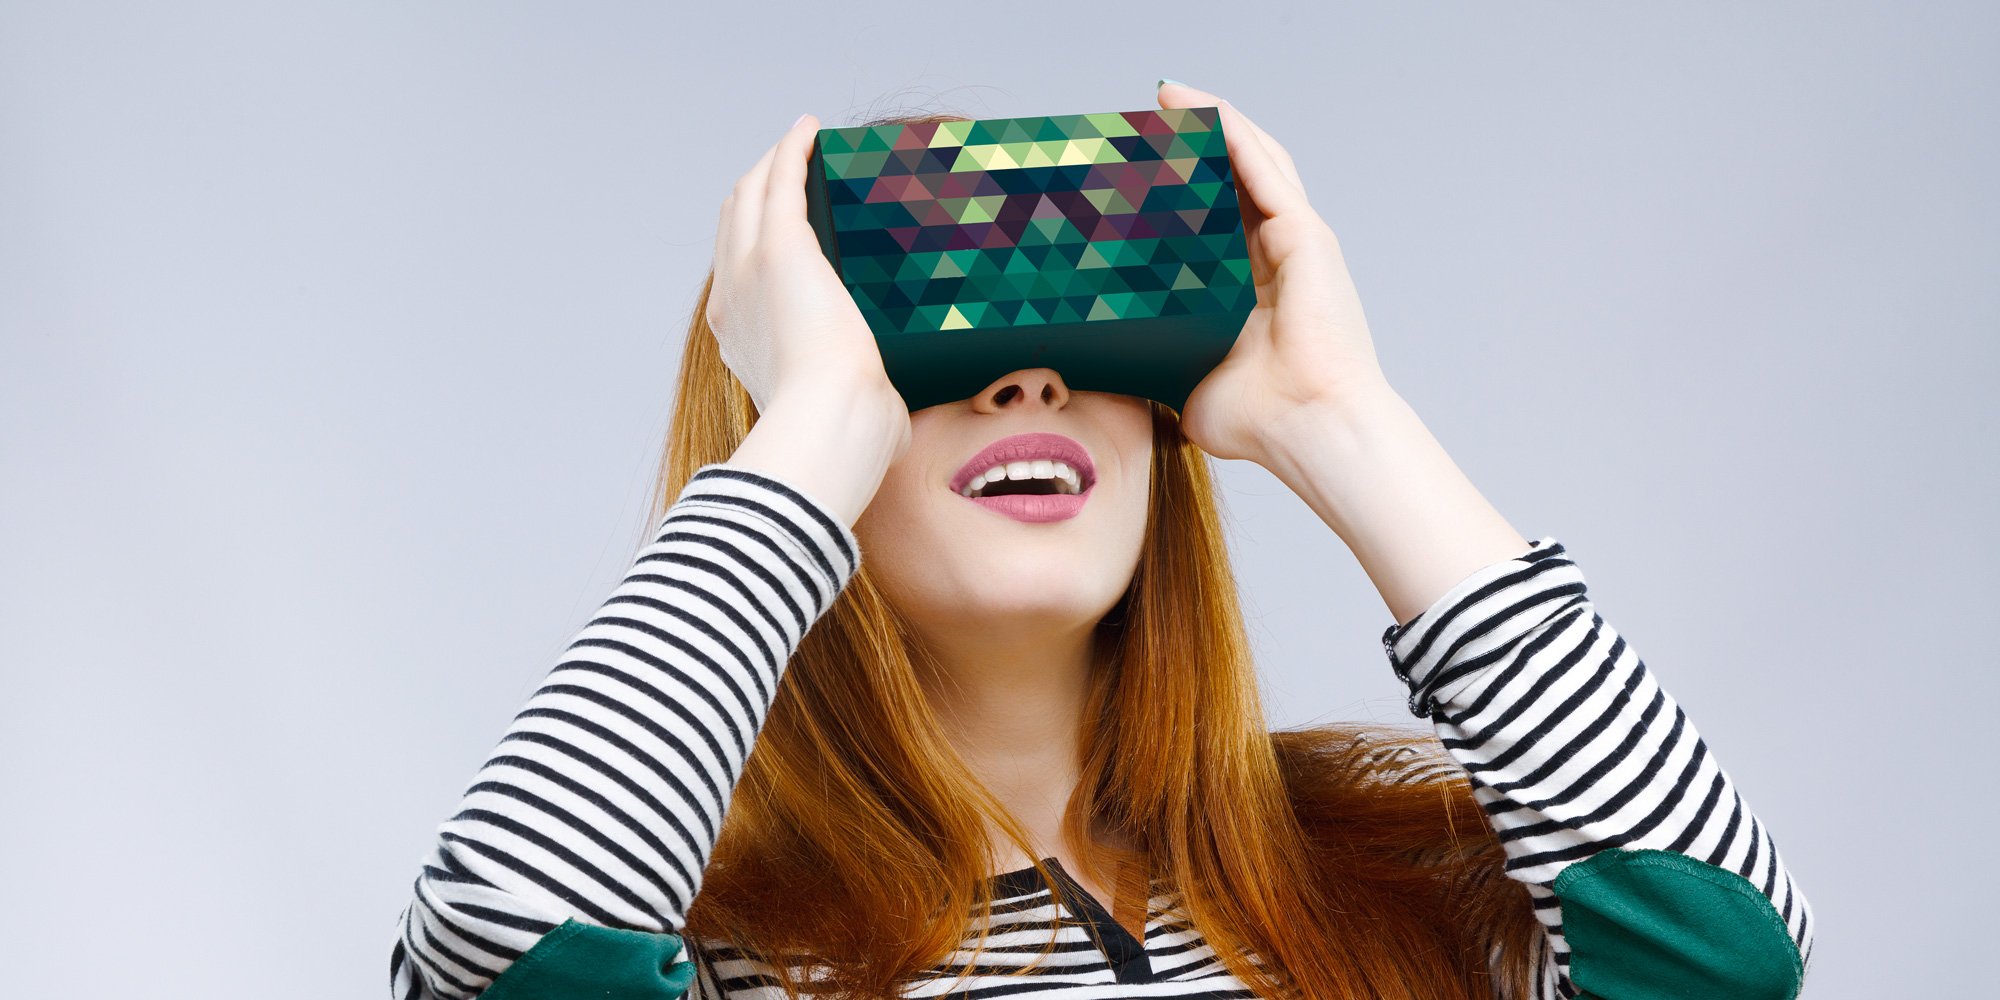 Get Your VR Googles